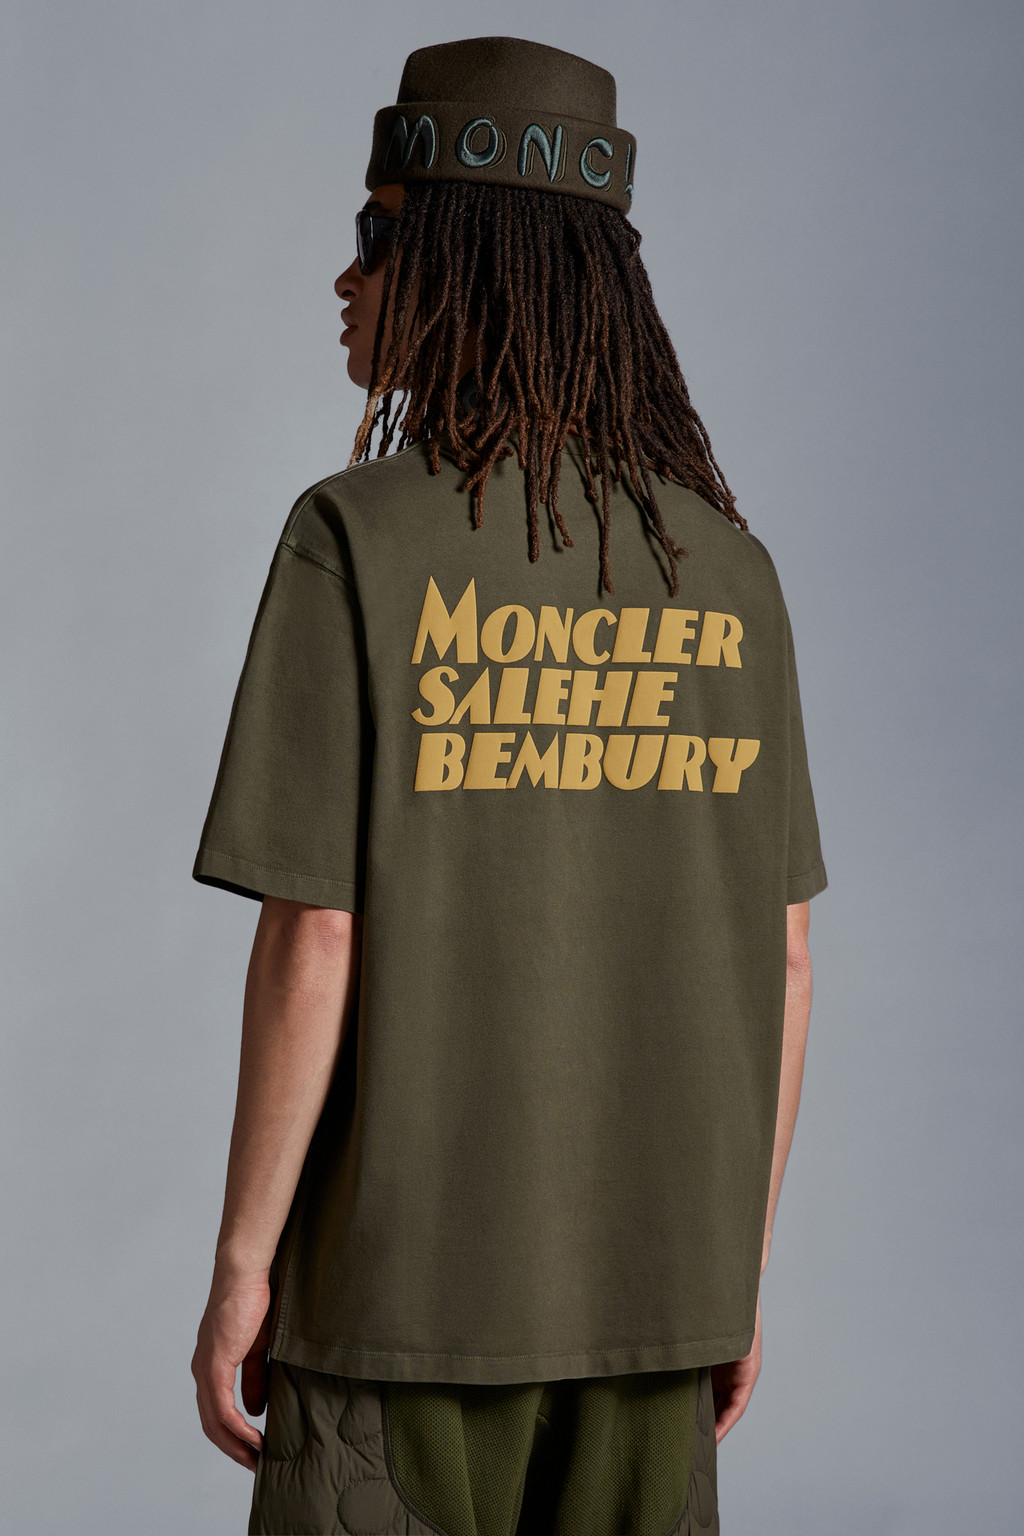 Moncler x Salehe Bembury for Genius - Shop Genius | Moncler US